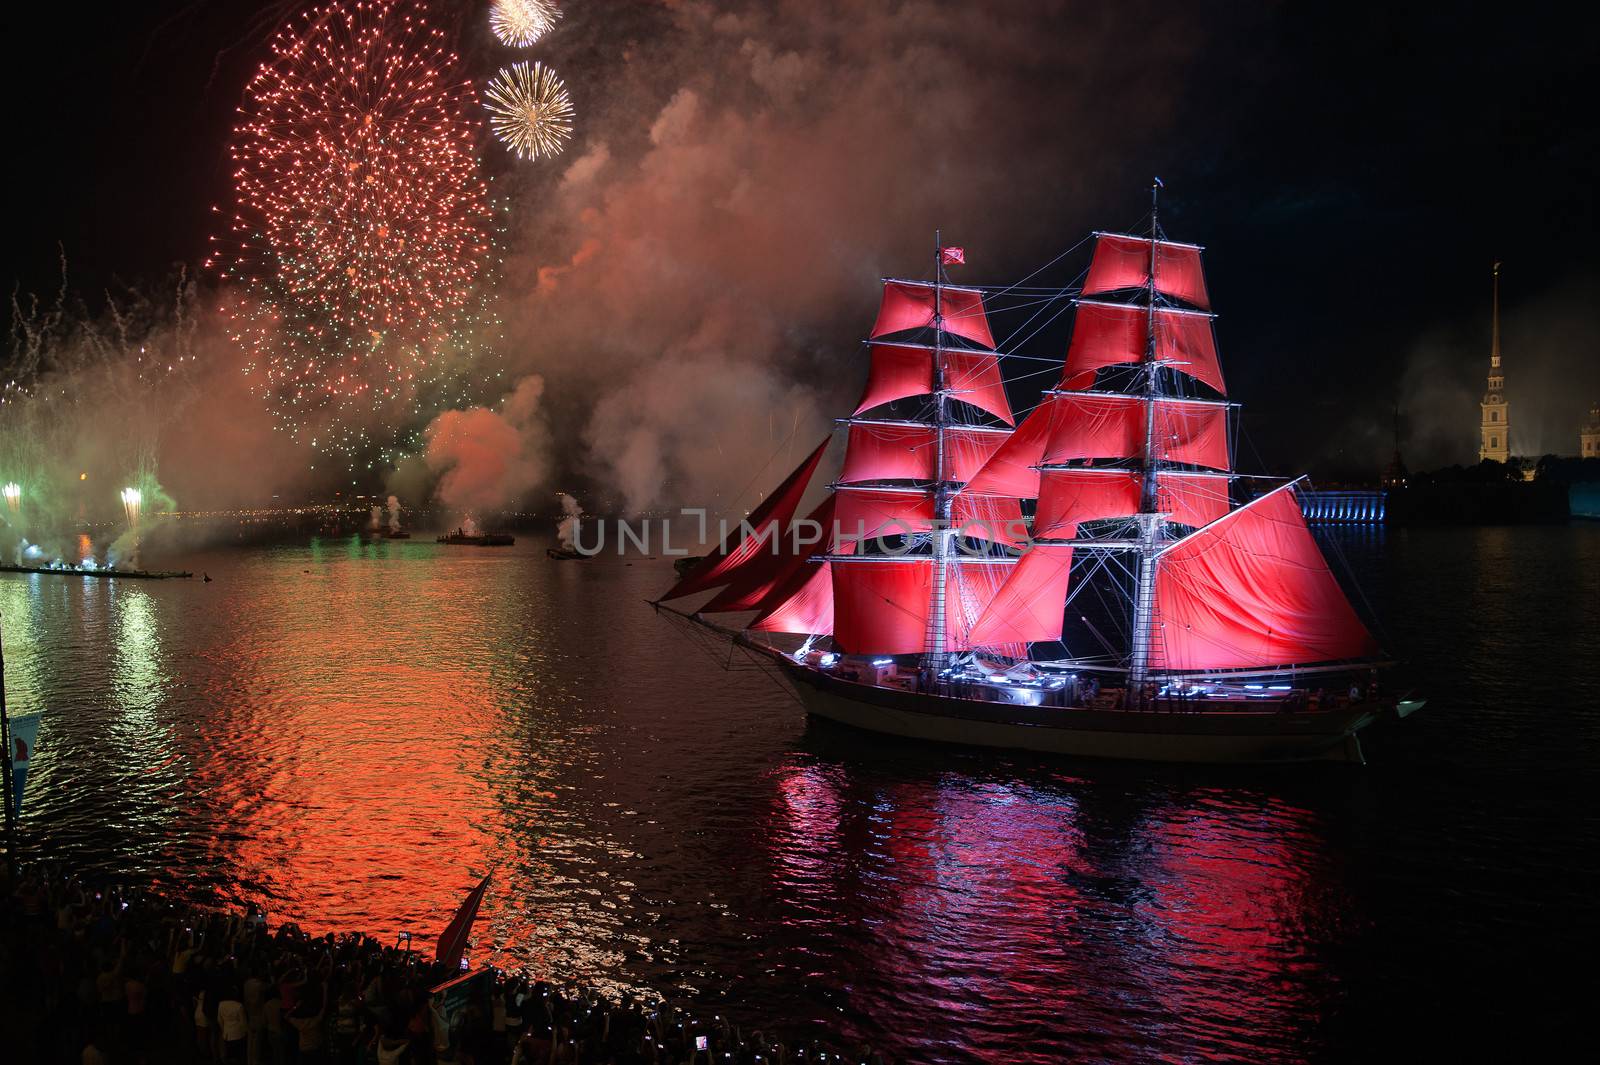 Scarlet Sails Festival by SURZ